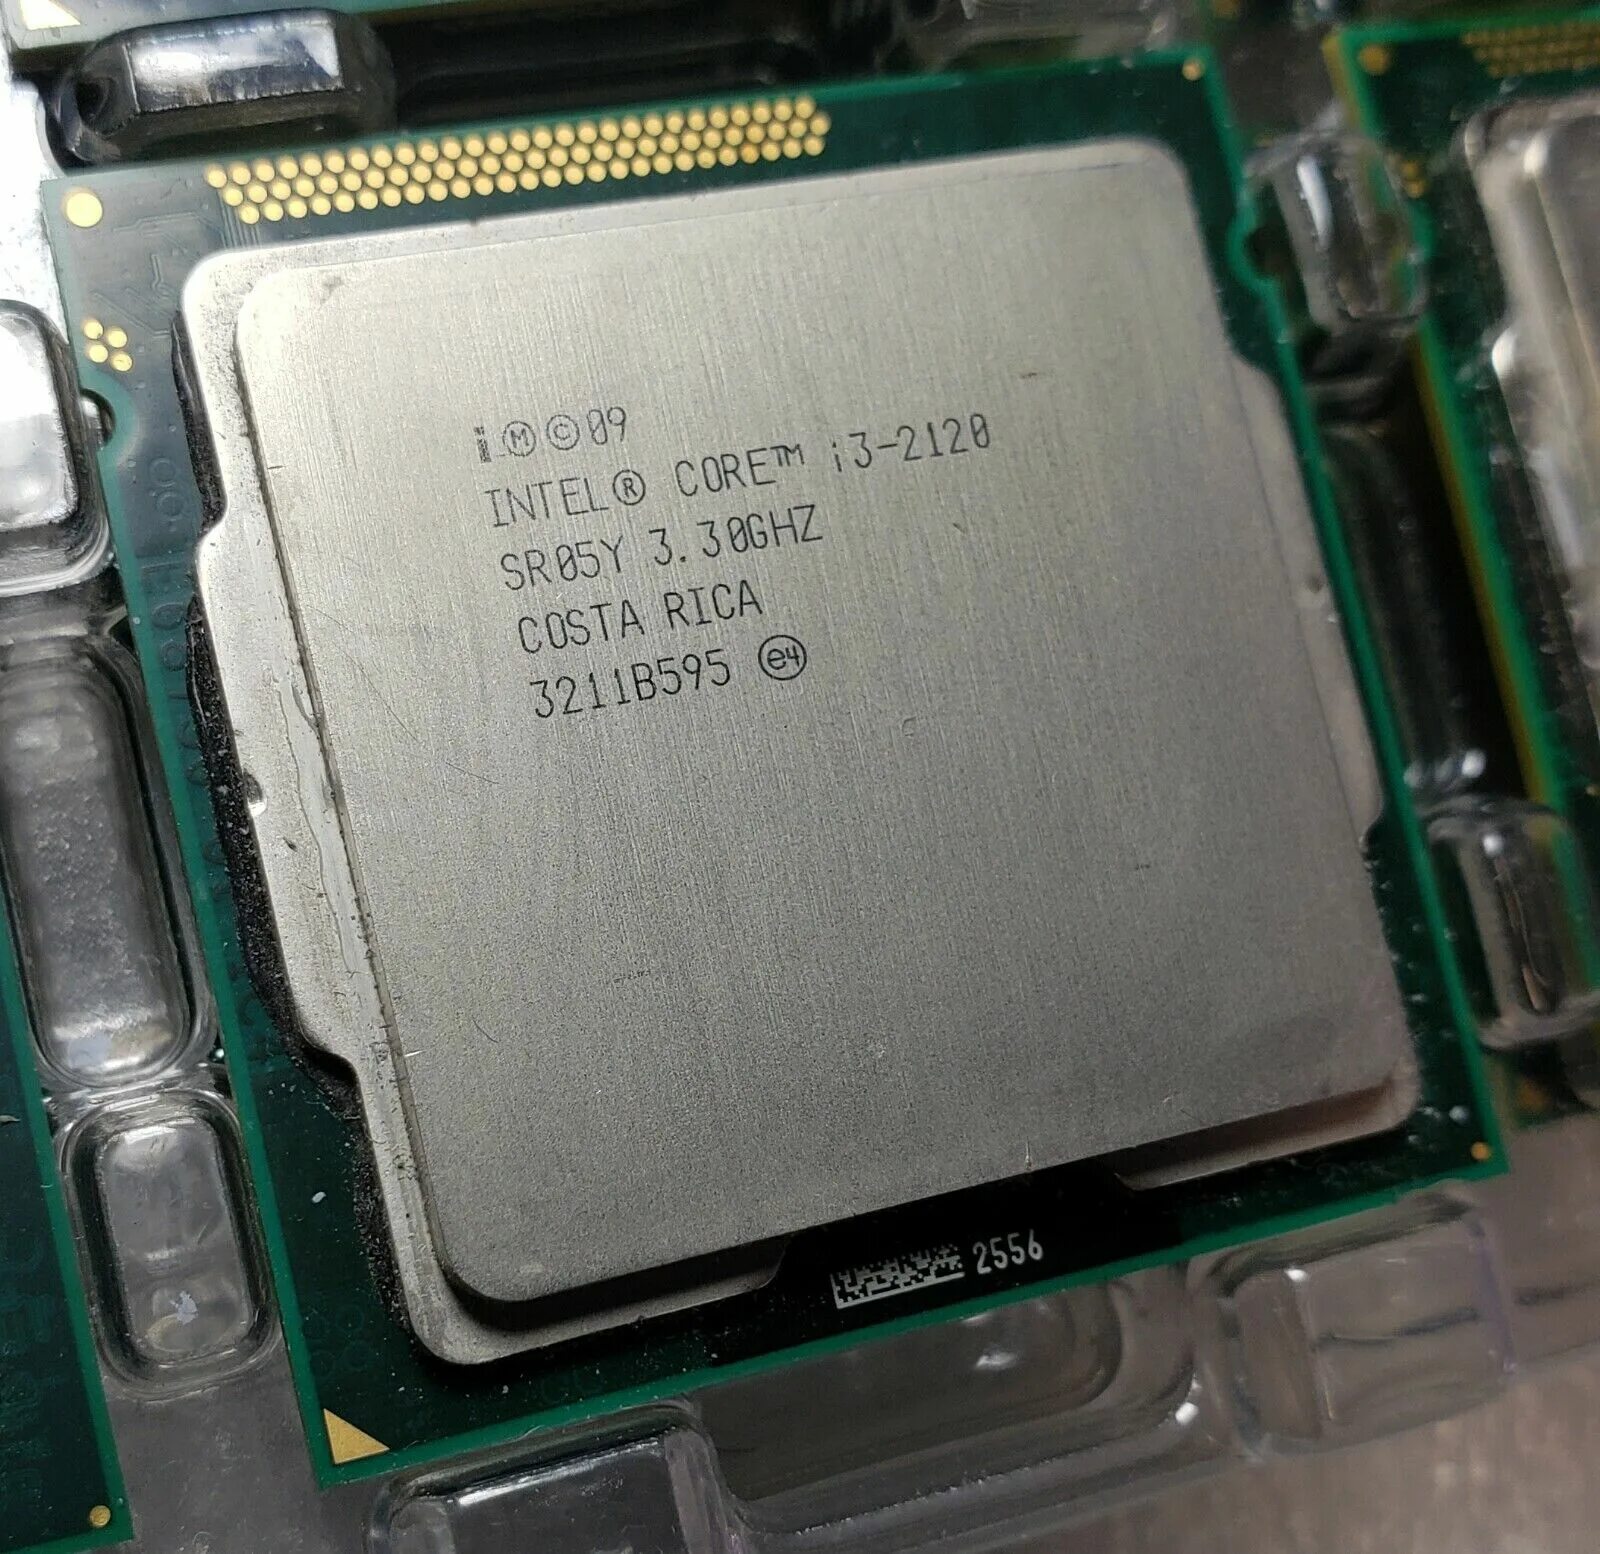 2120 сокет. Процессор Intel Core i3 1155. Интел i3 2120. Intel® Core™ i3-2120. Core i3 2120 3.3GHZ.